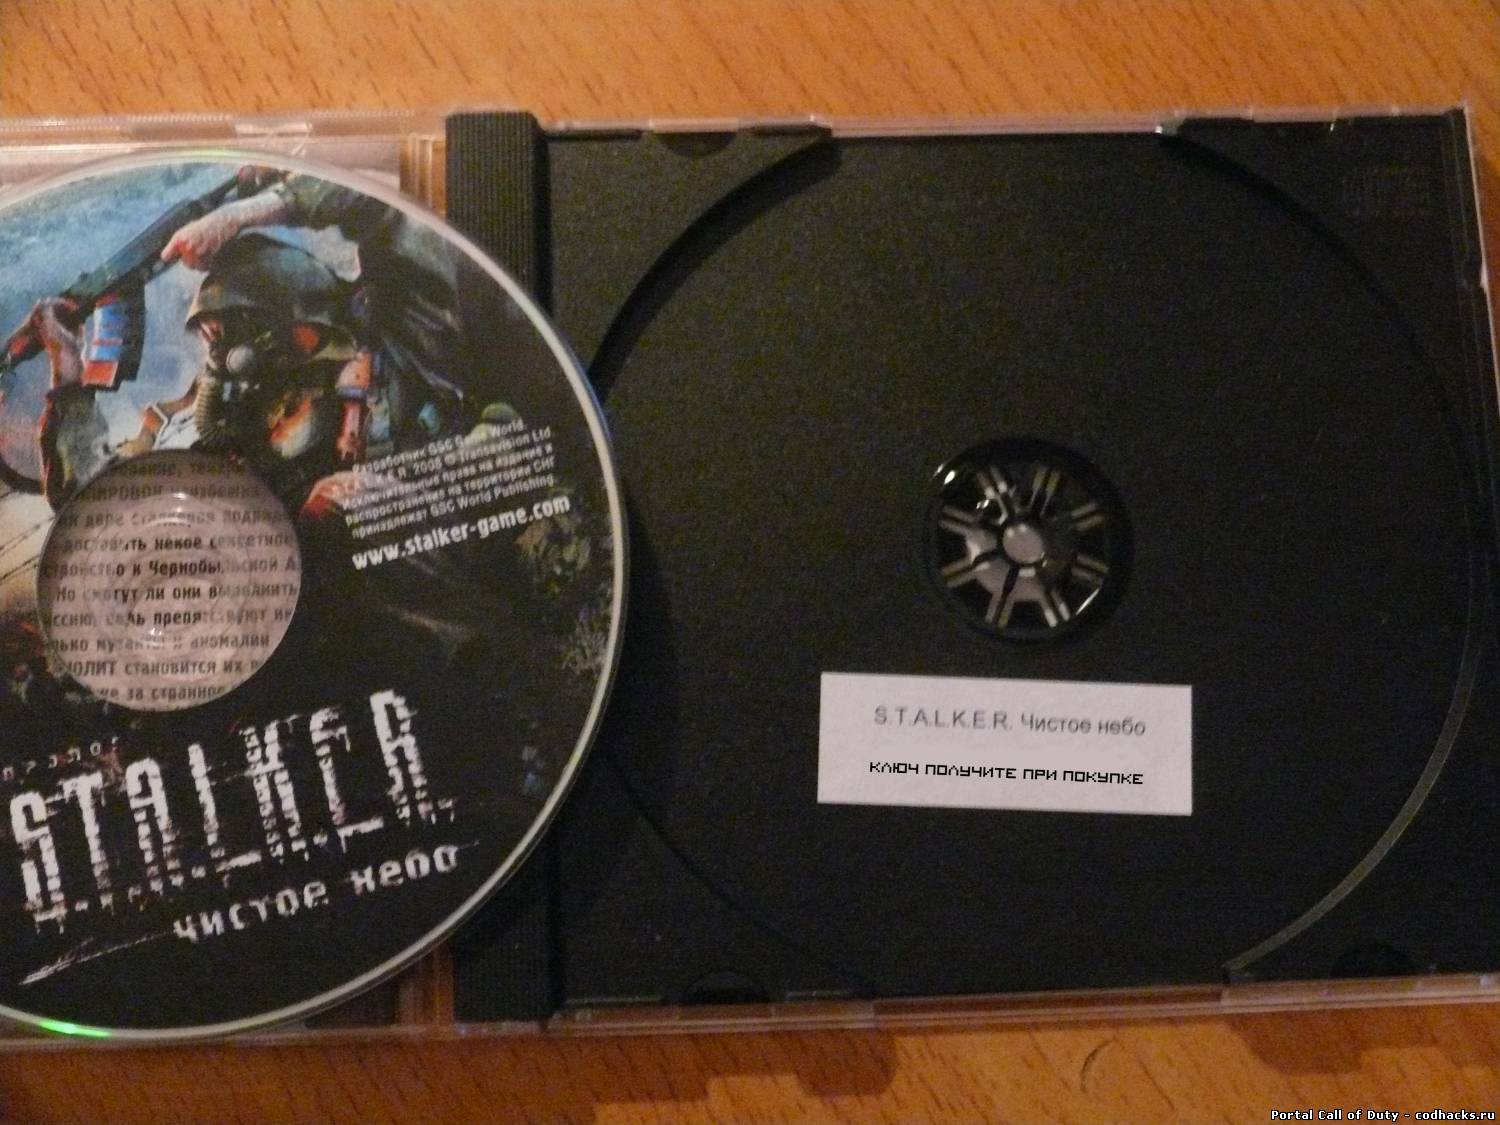 Ключ игры сталкер. Лицензионный диск сталкер чисто небо. CD диск сталкер. Серийный номер диска. Ключи сталкер диск.